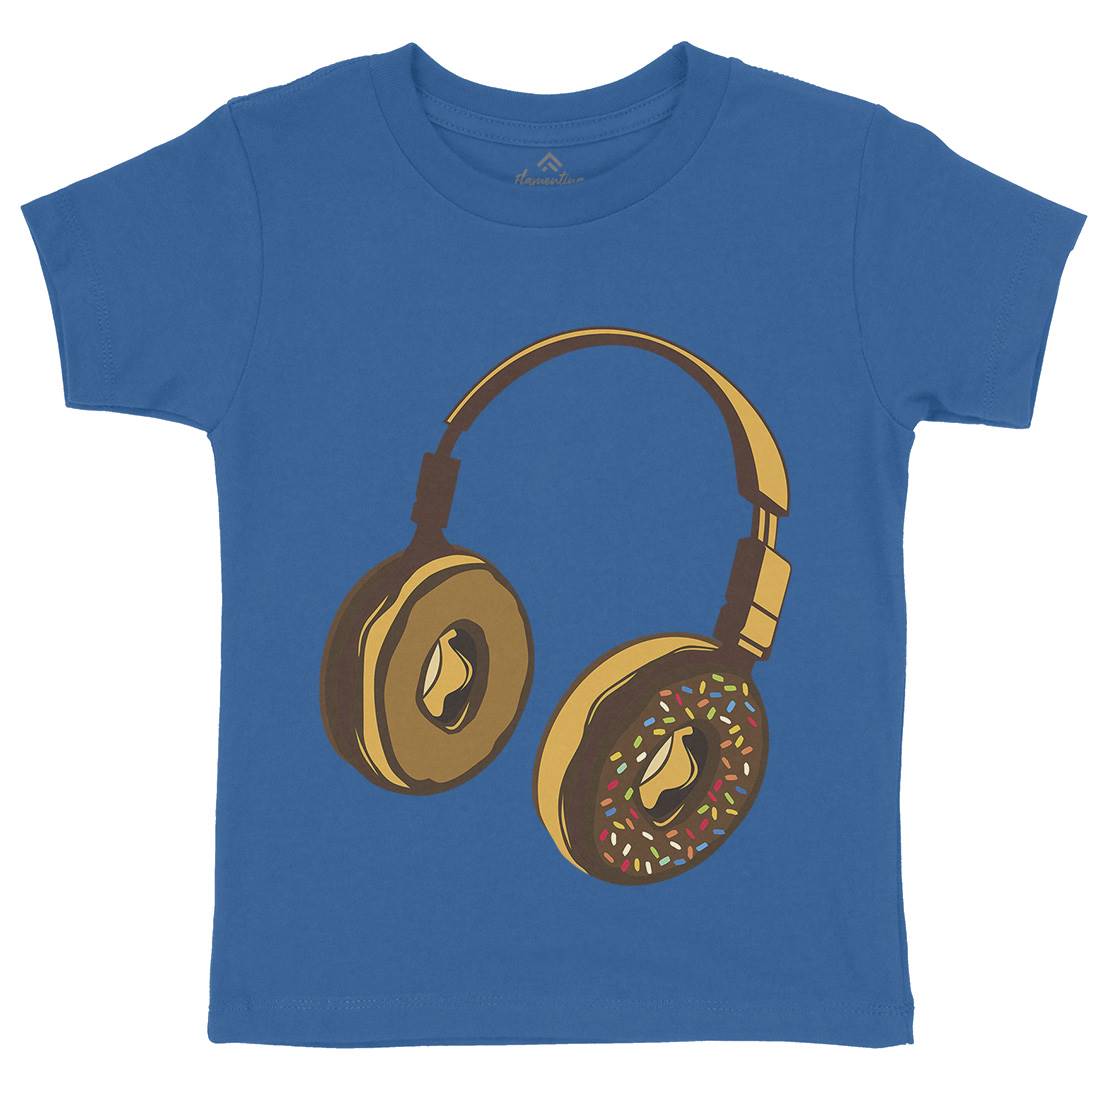 Headphone Donut Kids Crew Neck T-Shirt Music B050